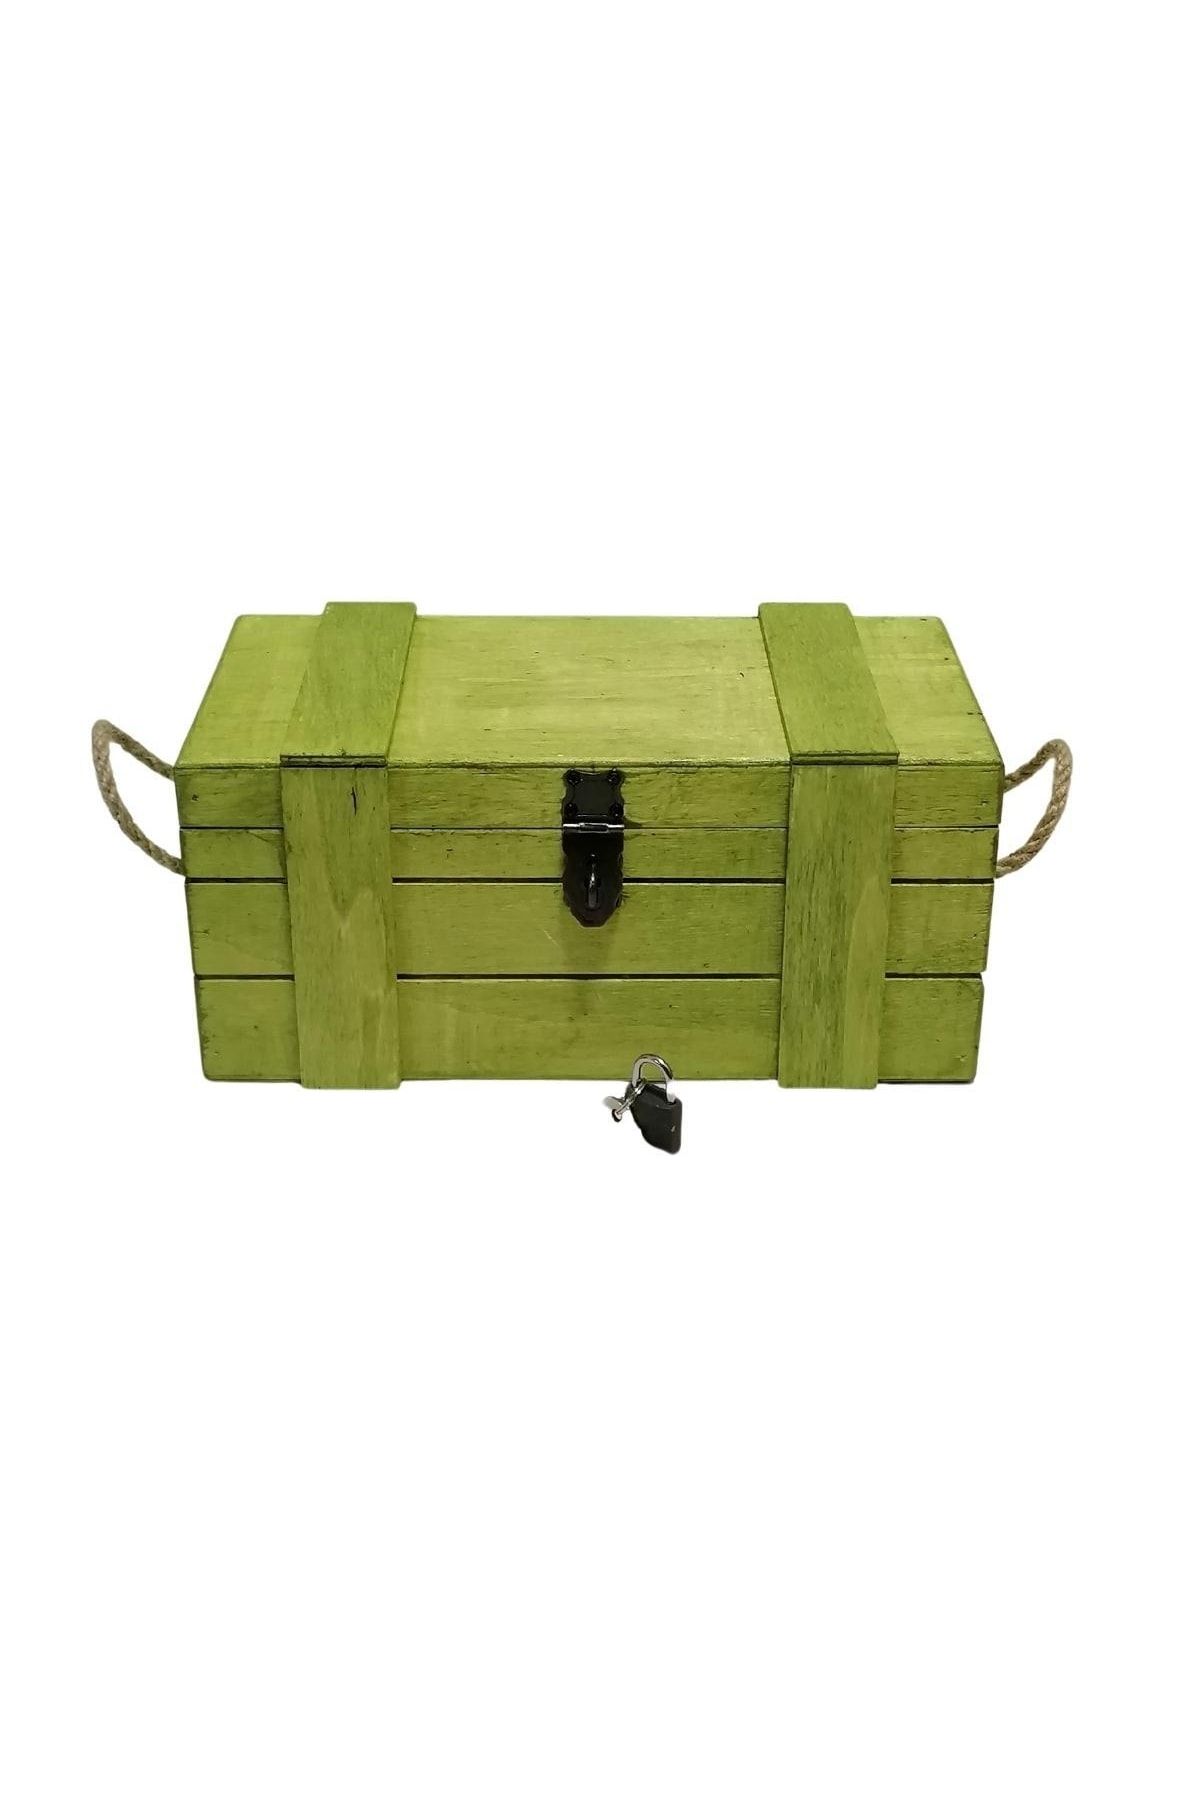 Lime Art Shop Yeşil Ahşap Kilitli Kutu Anı Kutusu Hediye Kutusu Saklama Kutusu Çok Amaçlı Ahşap Kutu 27x 14cm